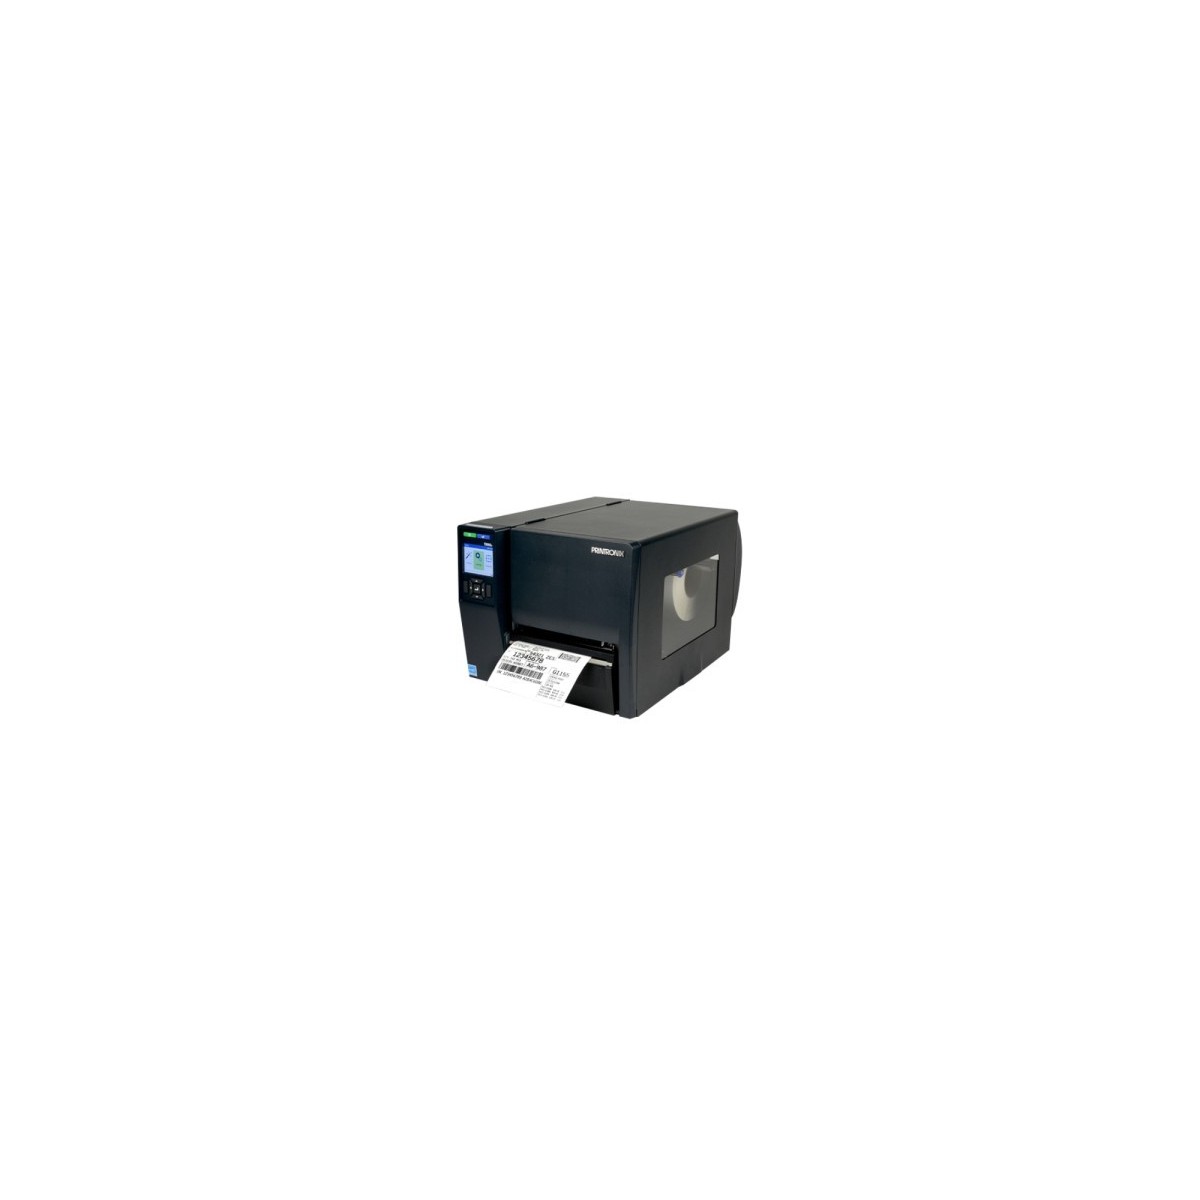 Printronix Auto ID T6204e Thermal Transfer Printer 4 wide 203dpi - Printer - 203 dpi